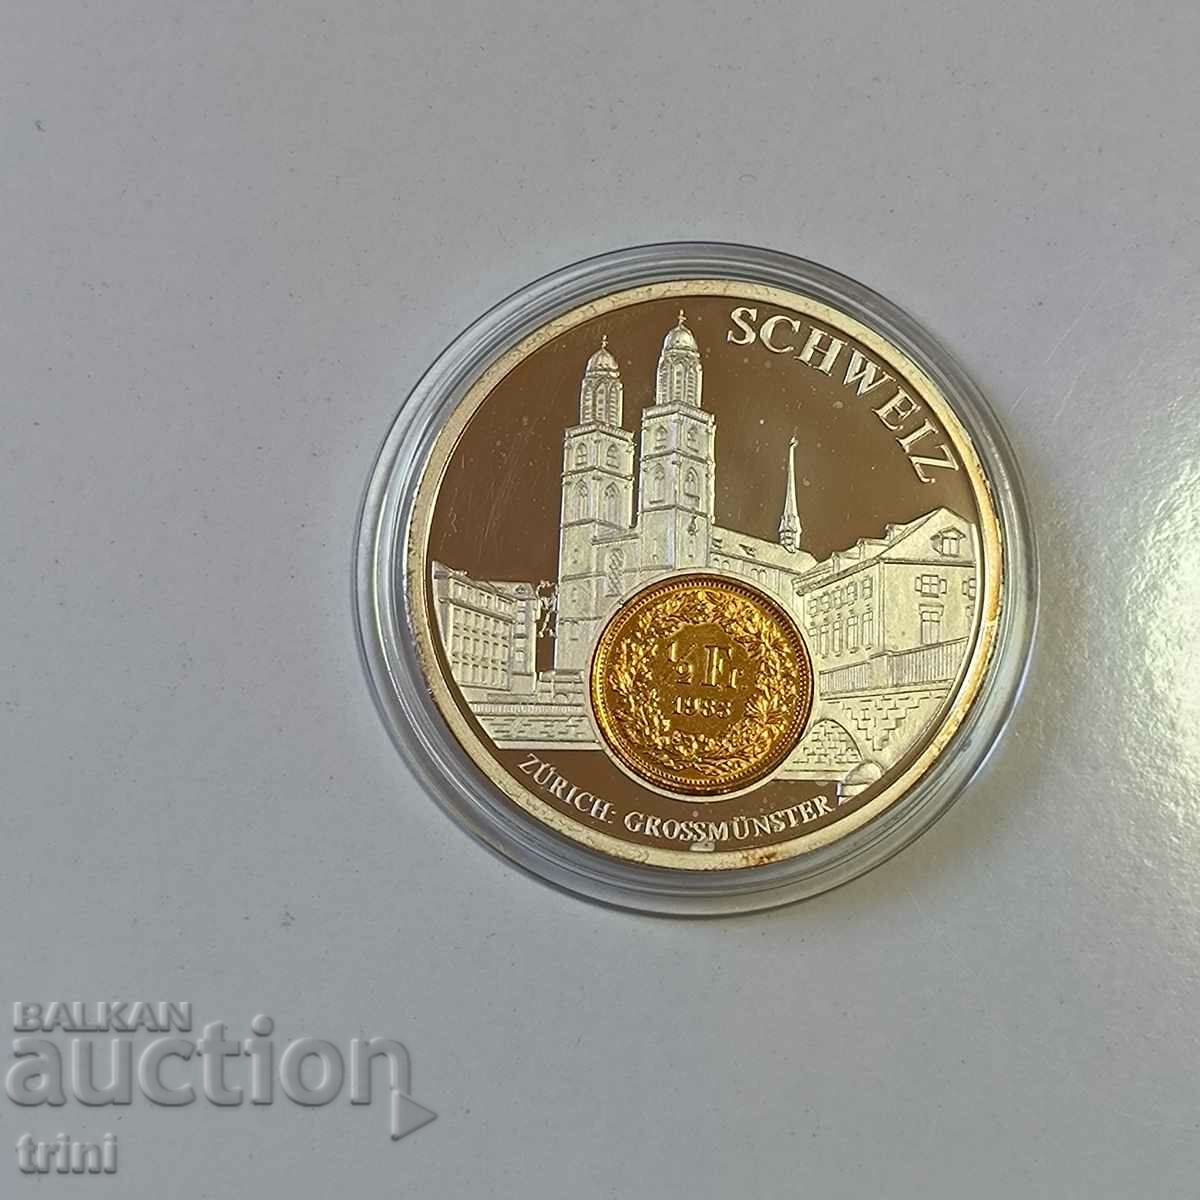 SWITZERLAND, Zurich - Plaque European currency